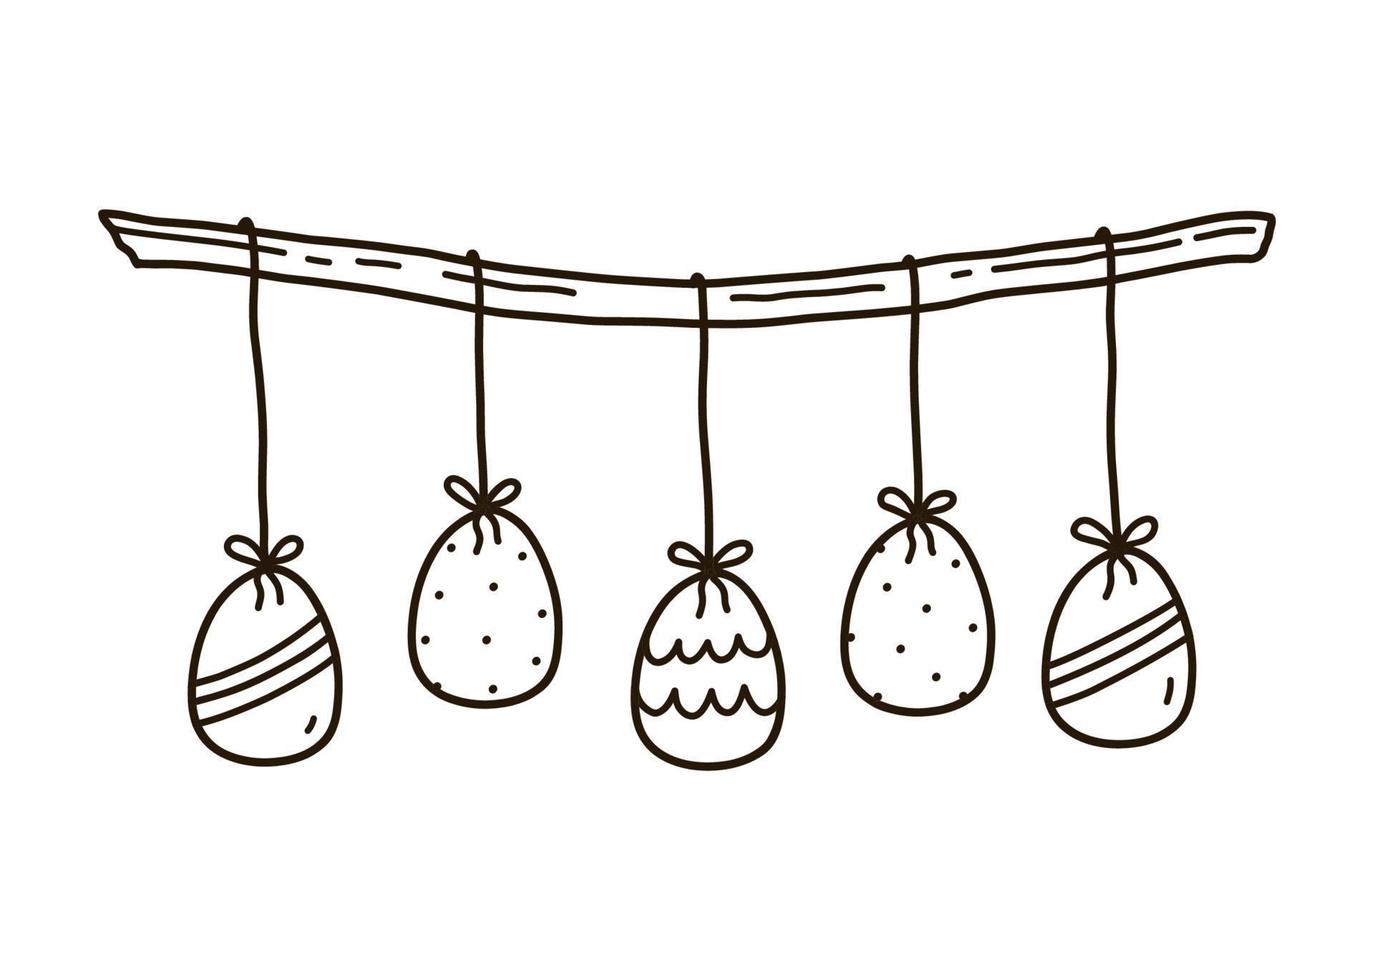 arredamento festivo con uova di Pasqua appese isolate su sfondo bianco. illustrazione disegnata a mano di vettore in stile doodle. perfetto per disegni, biglietti, loghi, decorazioni per le vacanze.